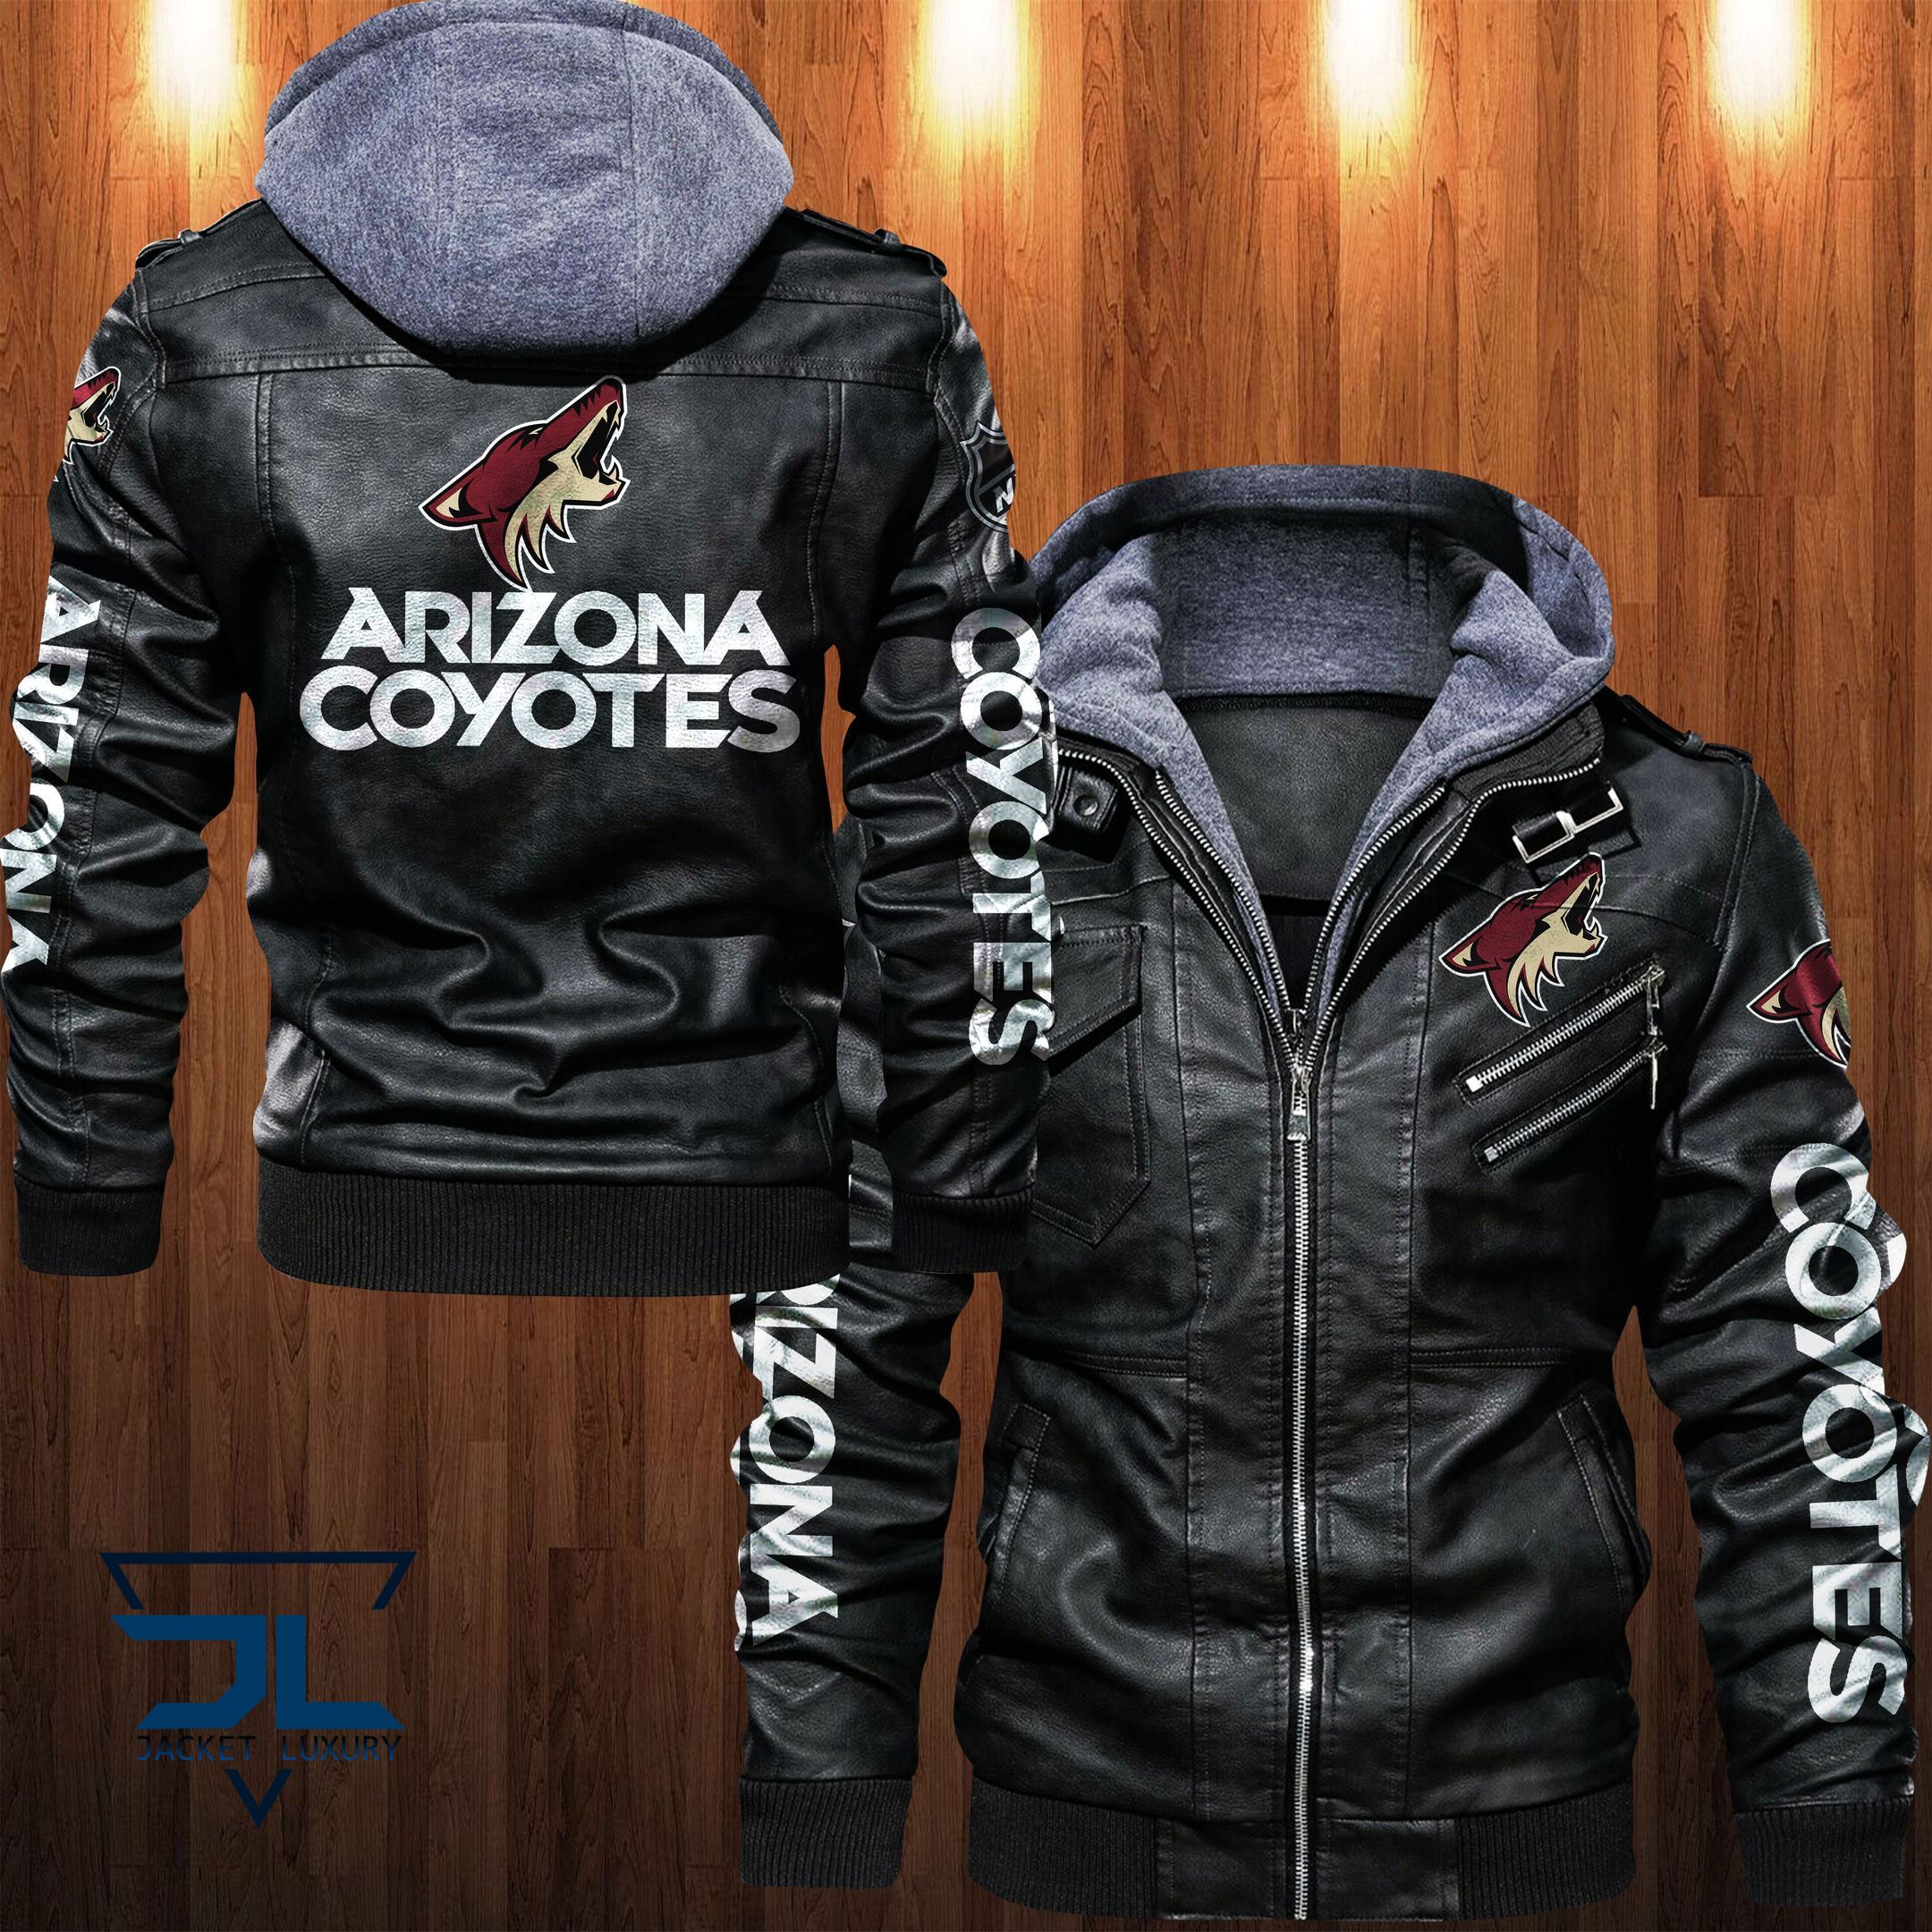 Get the best jackets under $100! 419